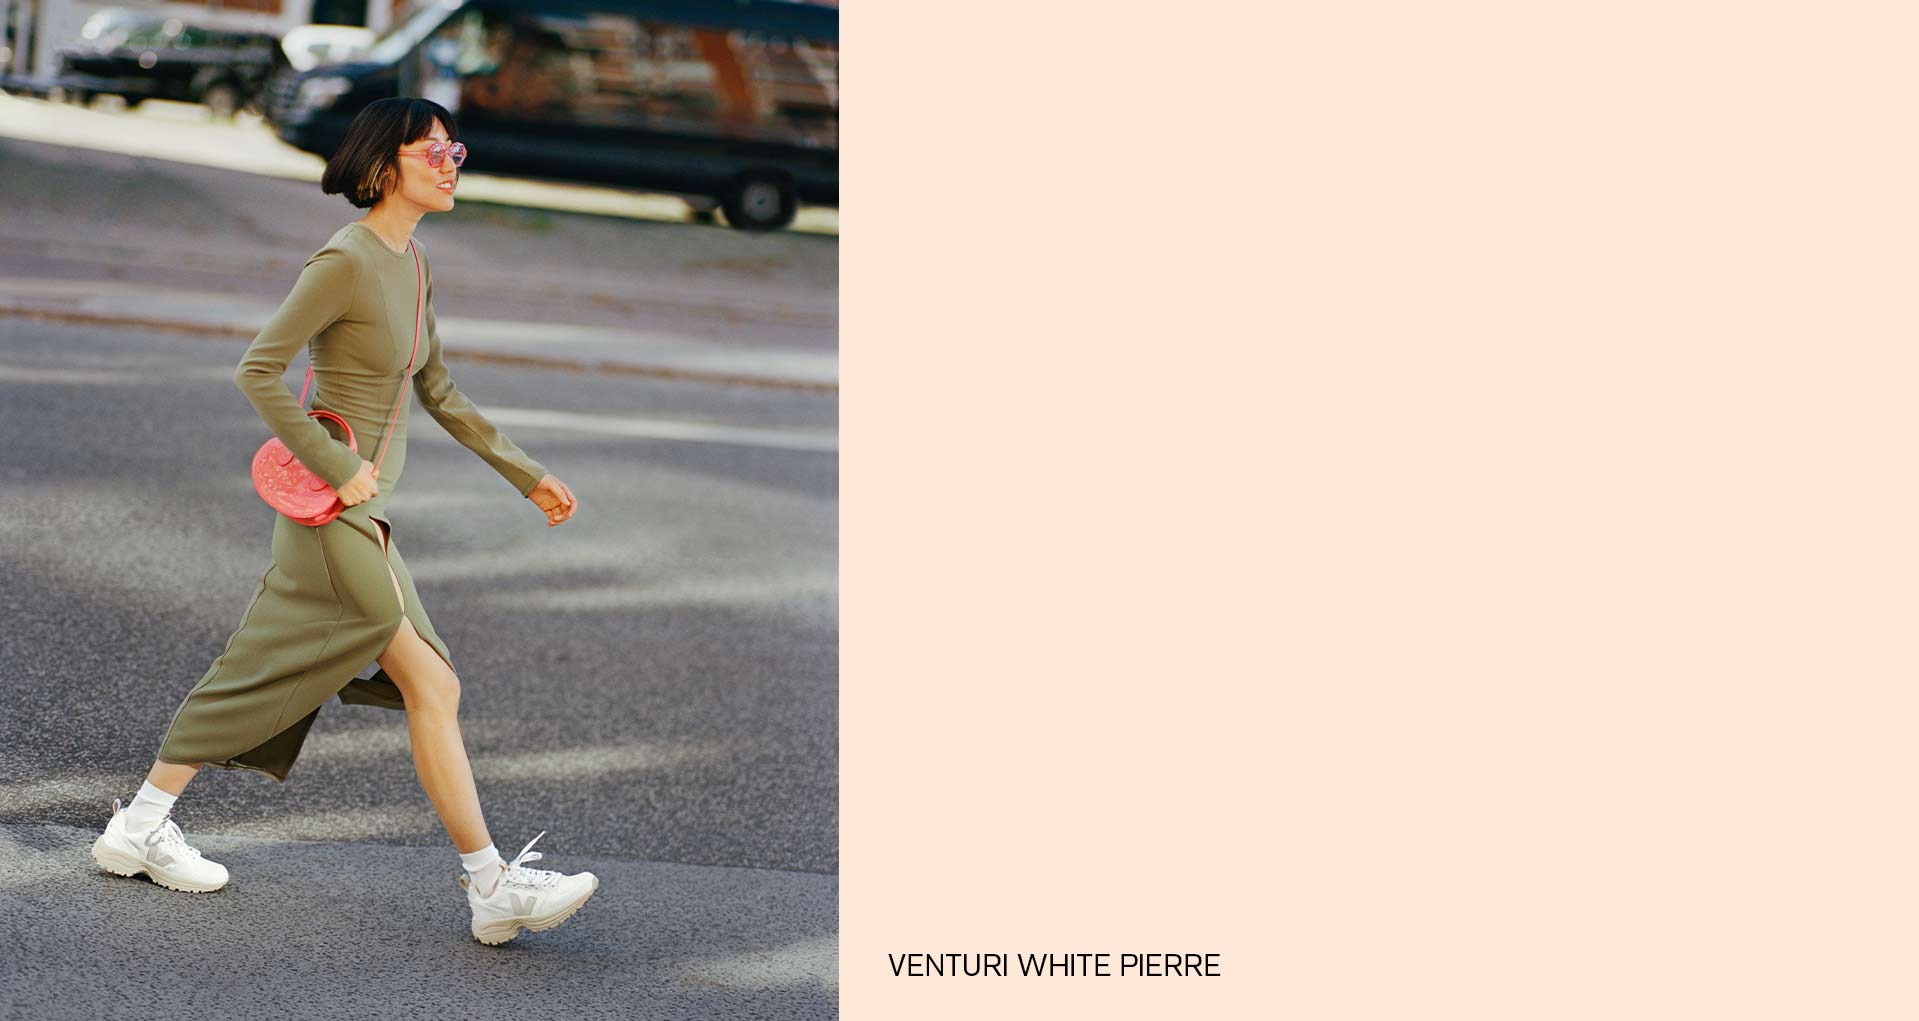 donna che cammina con scarpe da ginnastica VEJA venturi white stone al piede